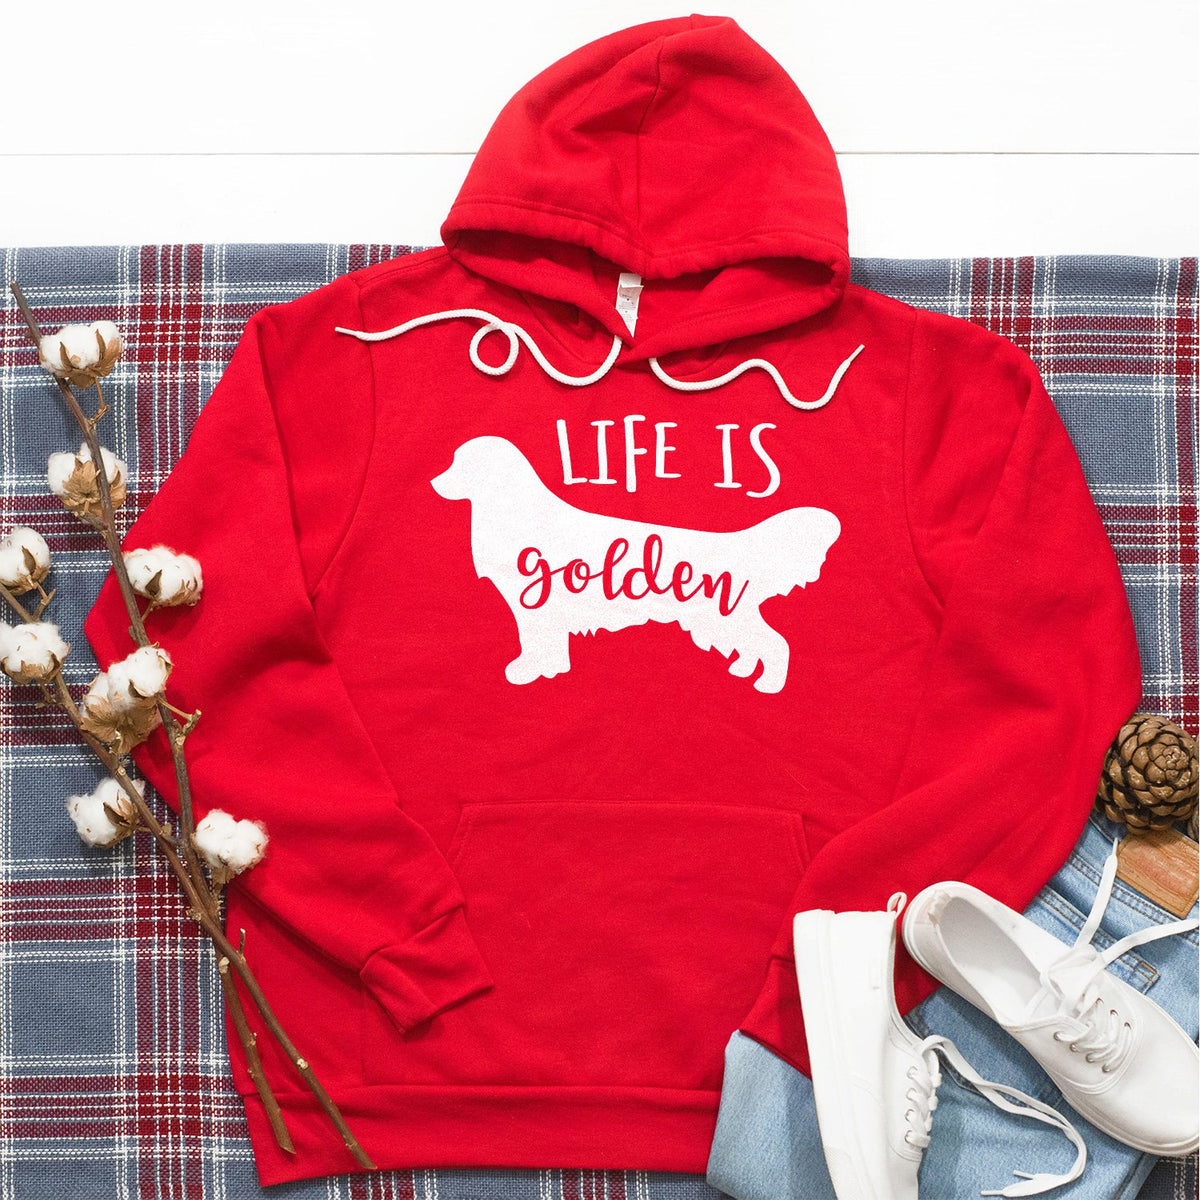 Life is Golden Retriever - Hoodie Sweatshirt